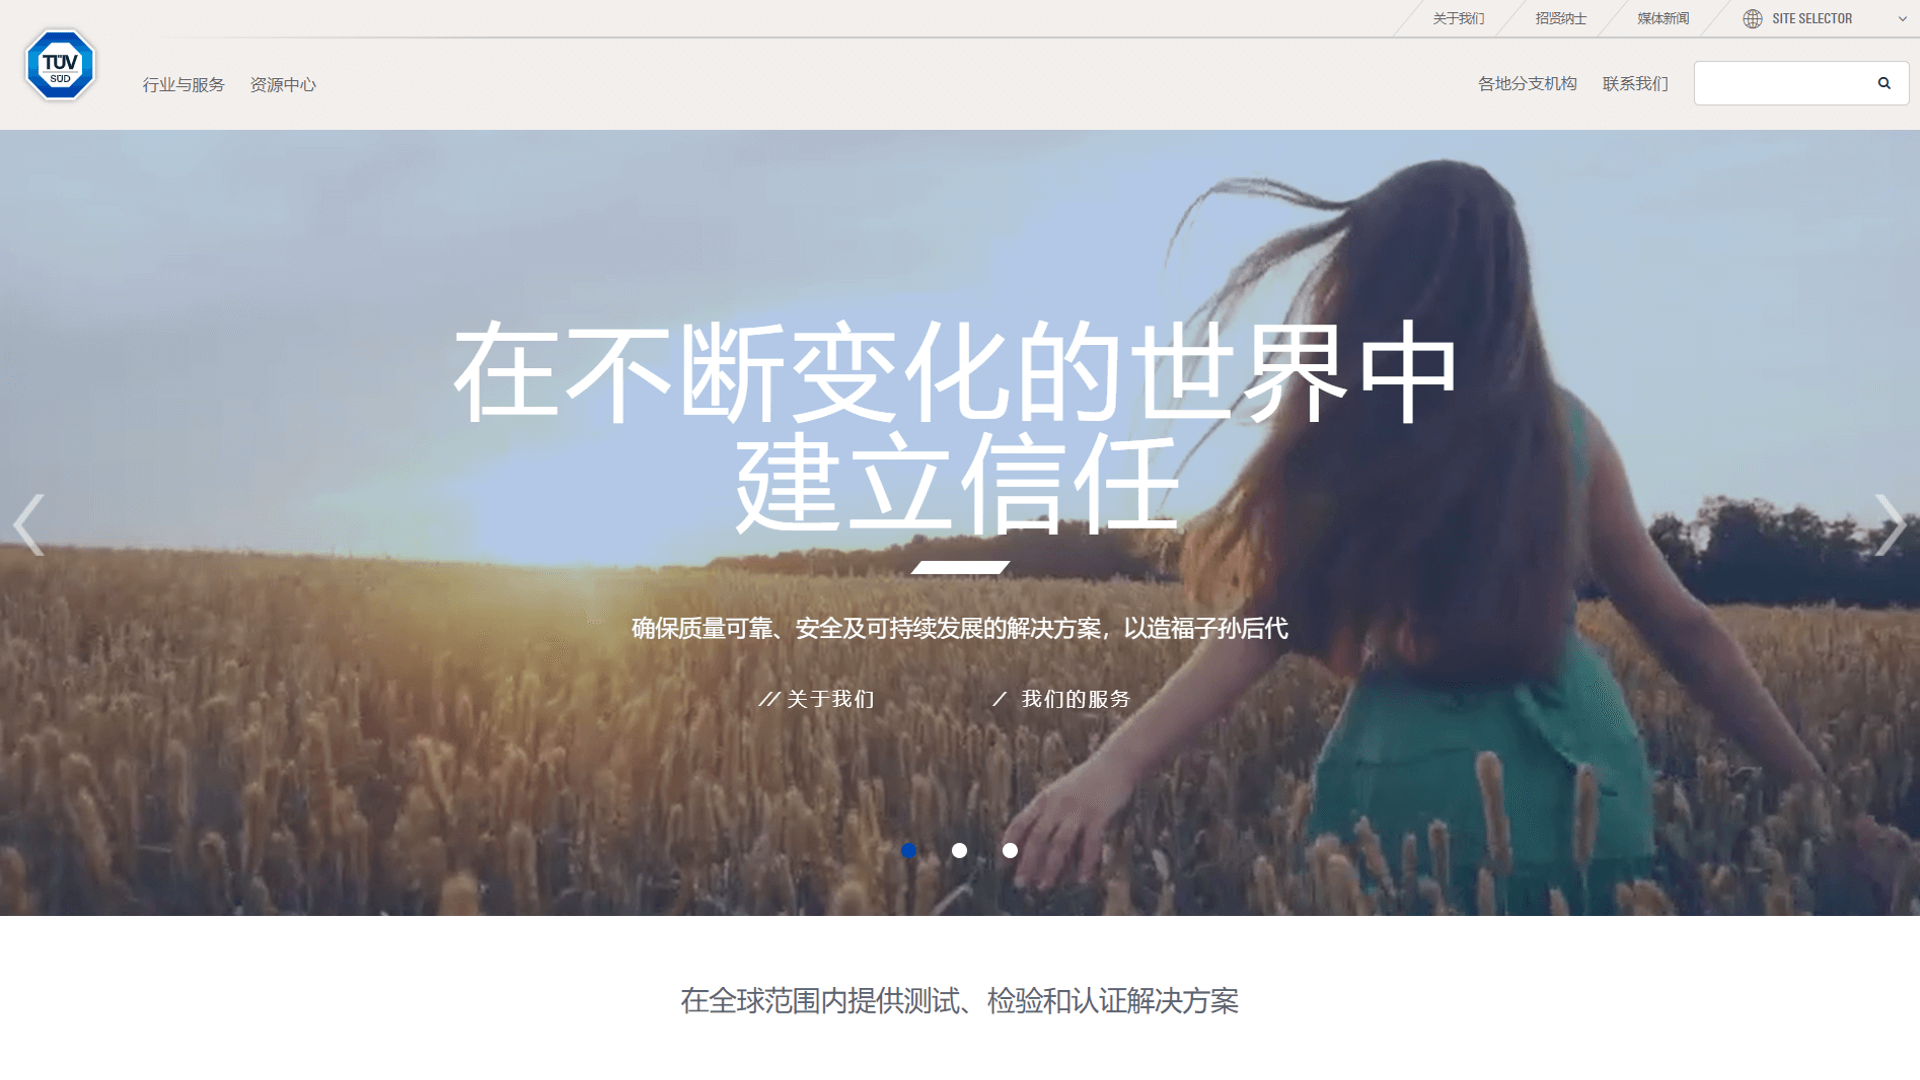 TüV SüD China Website